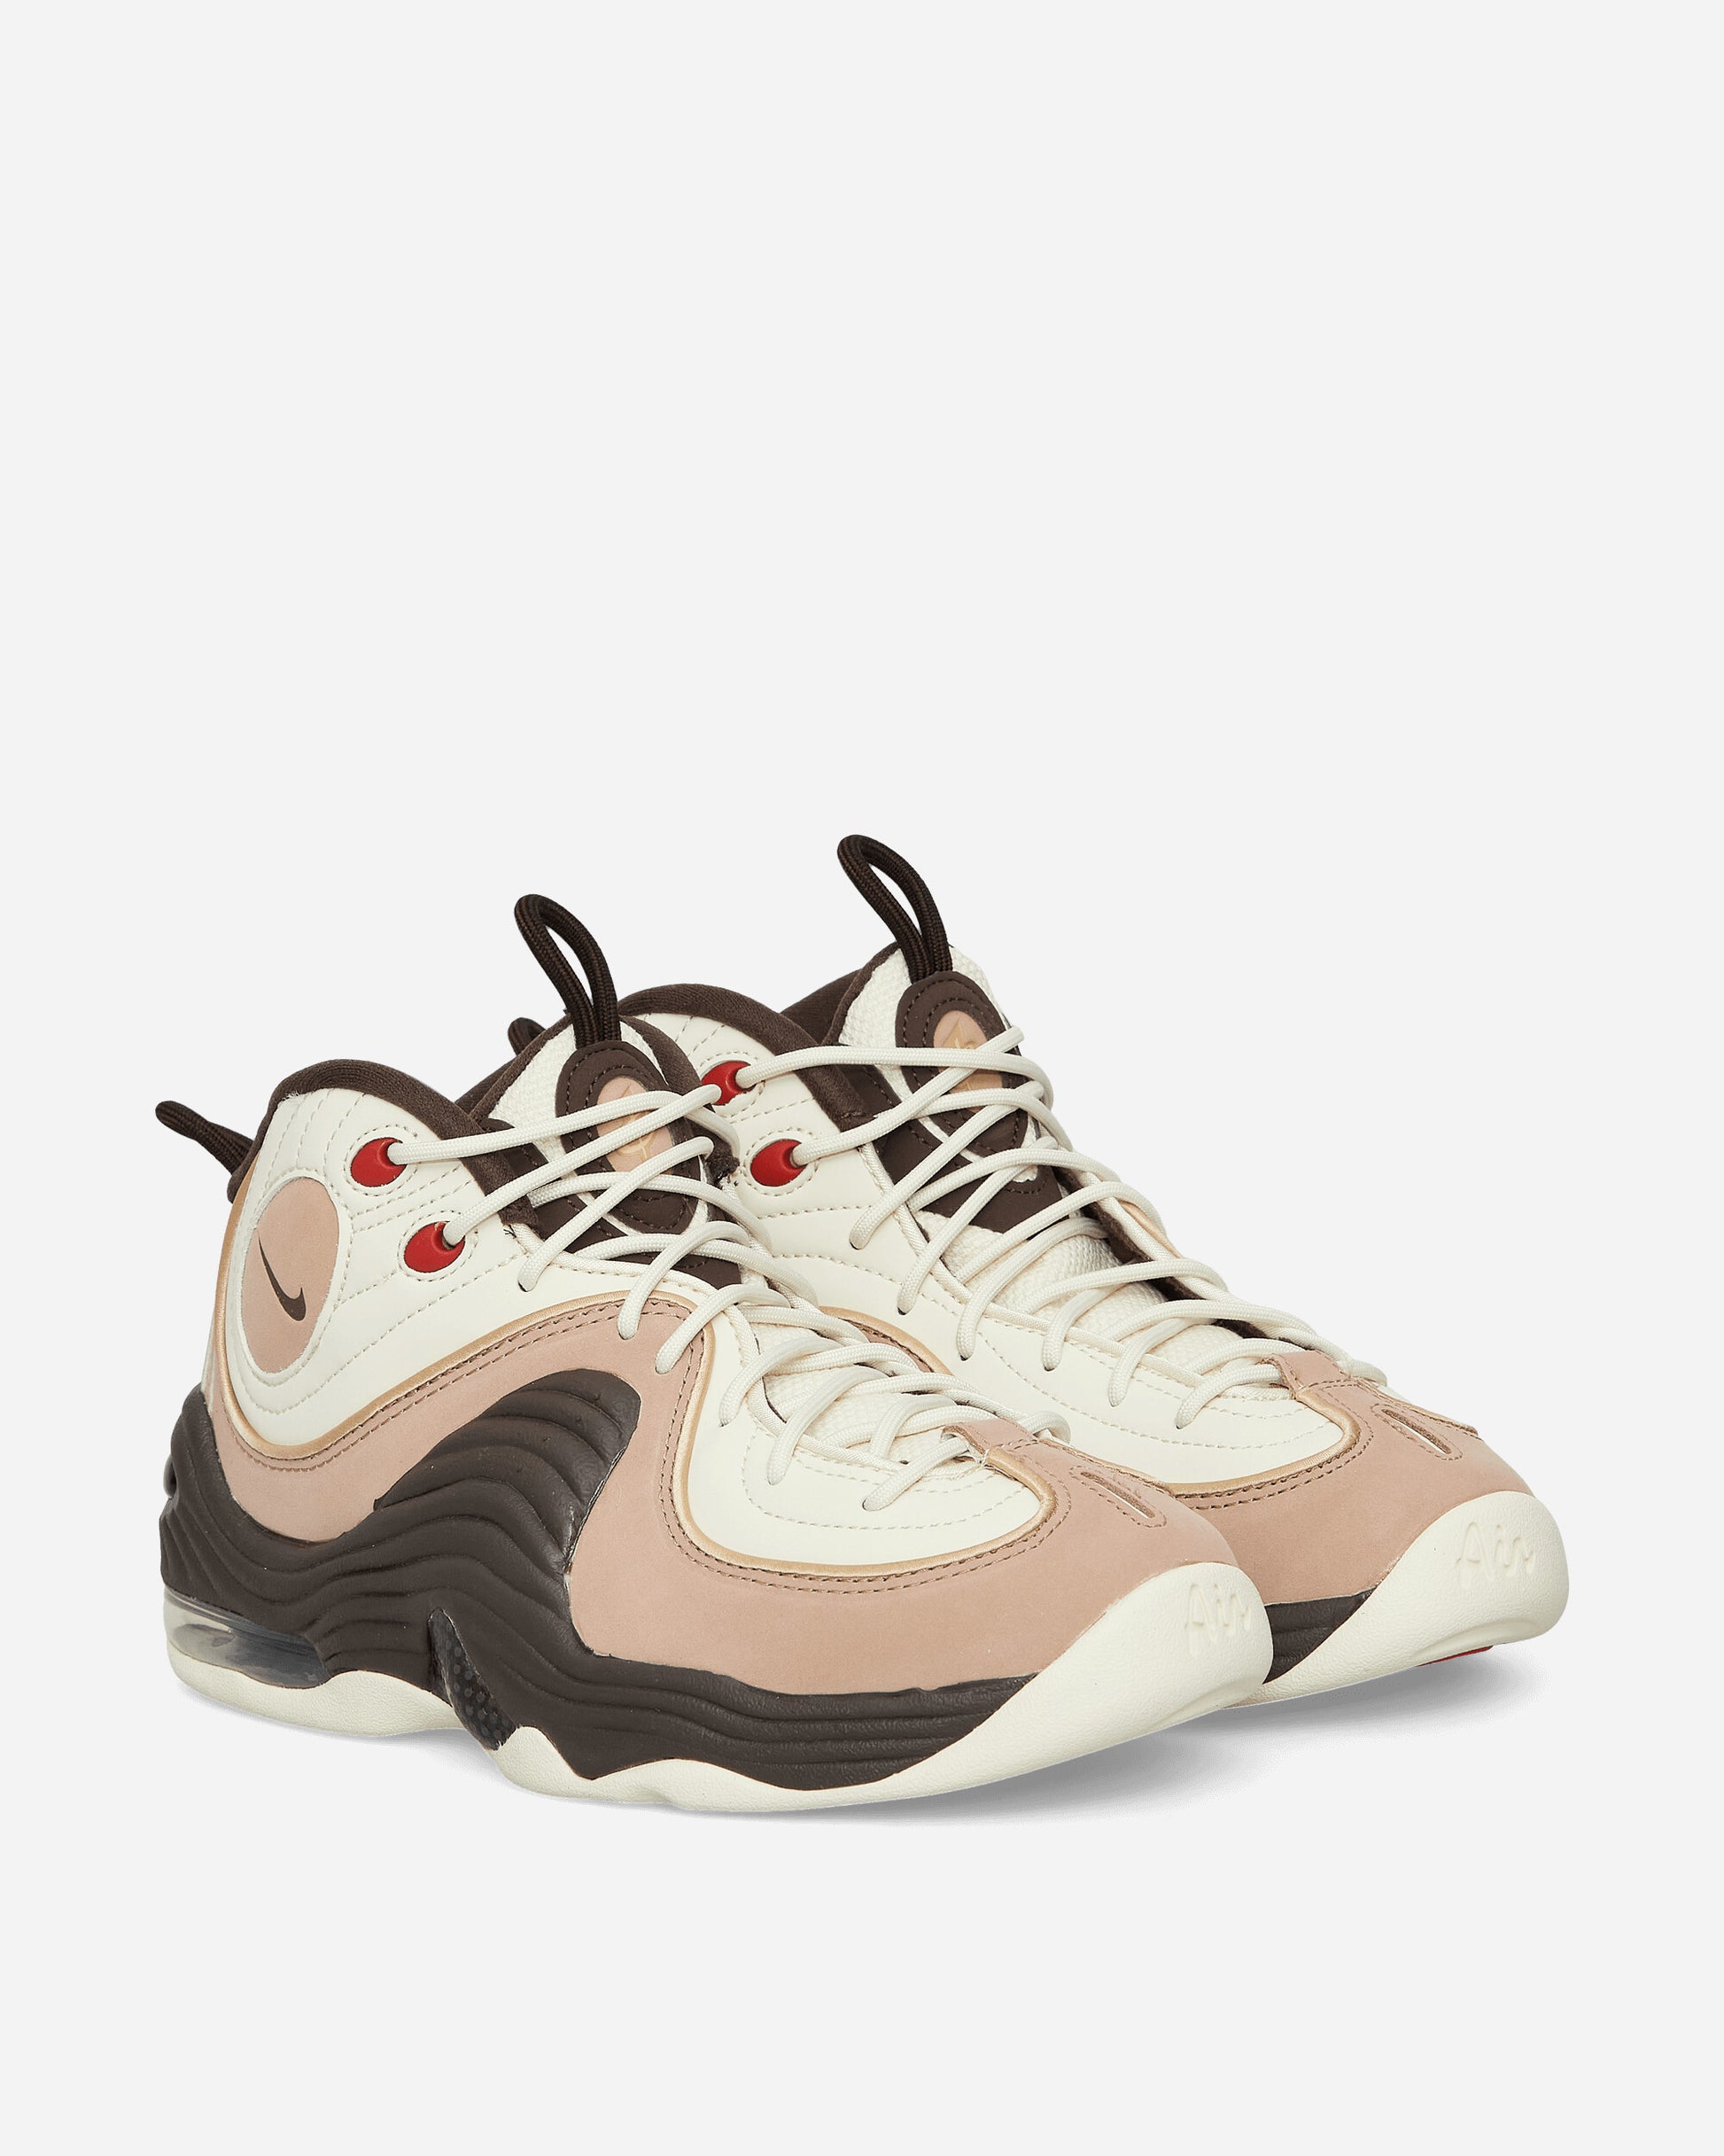 Nike Air Penny Ii Nas Coconut Milk/Baroque Brown Sneakers Low FB8885-100